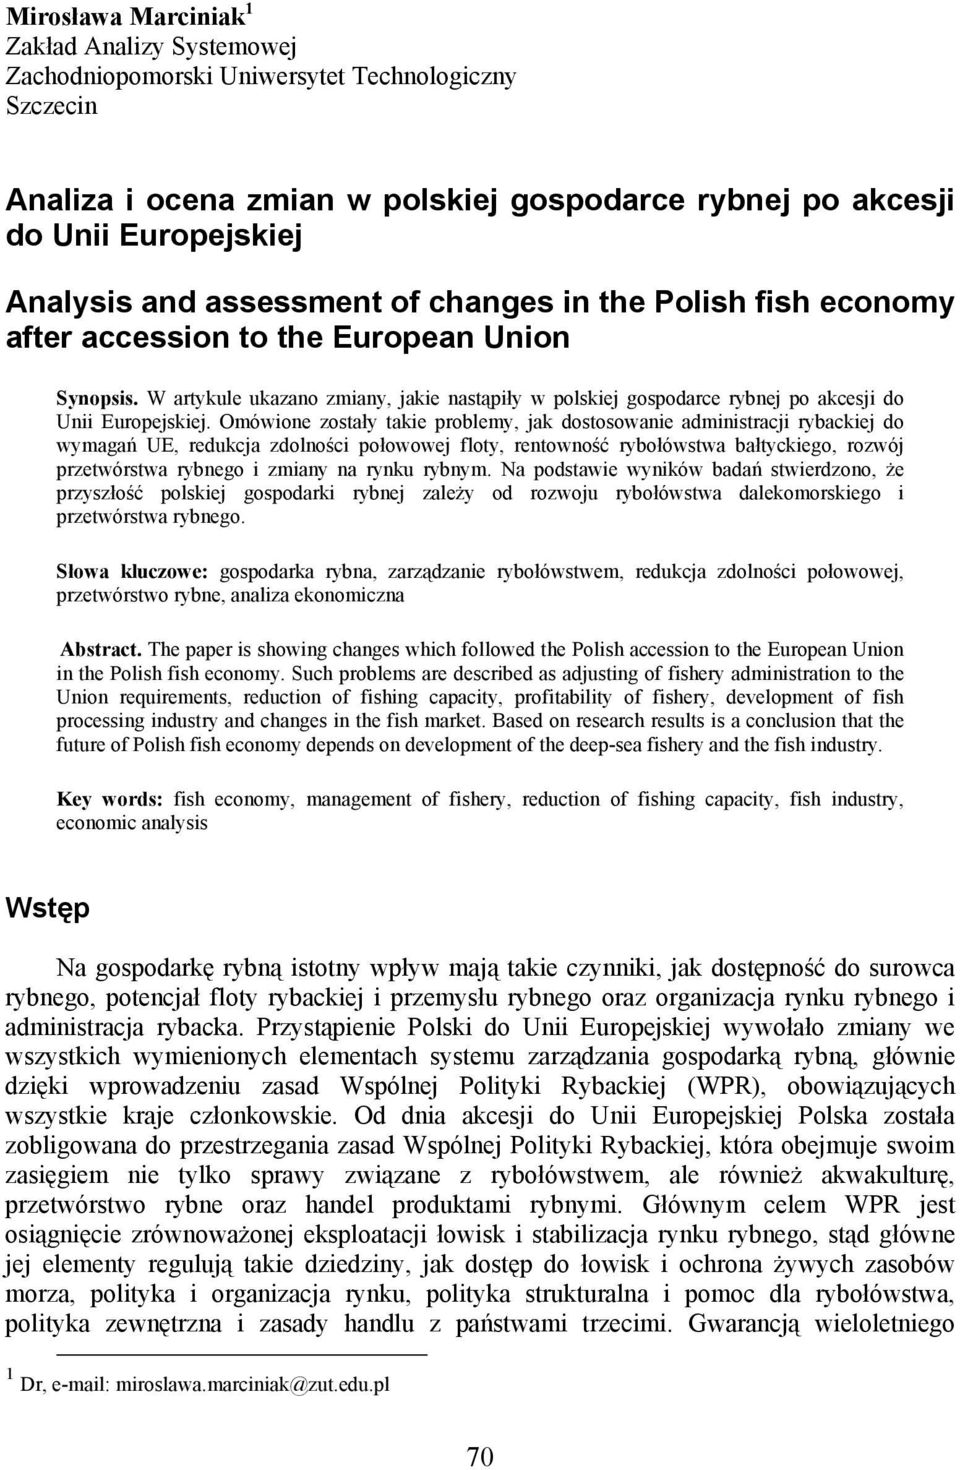 W artykule ukazano zmiany, jakie nastąpiły w polskiej gospodarce rybnej po akcesji do Unii Europejskiej.